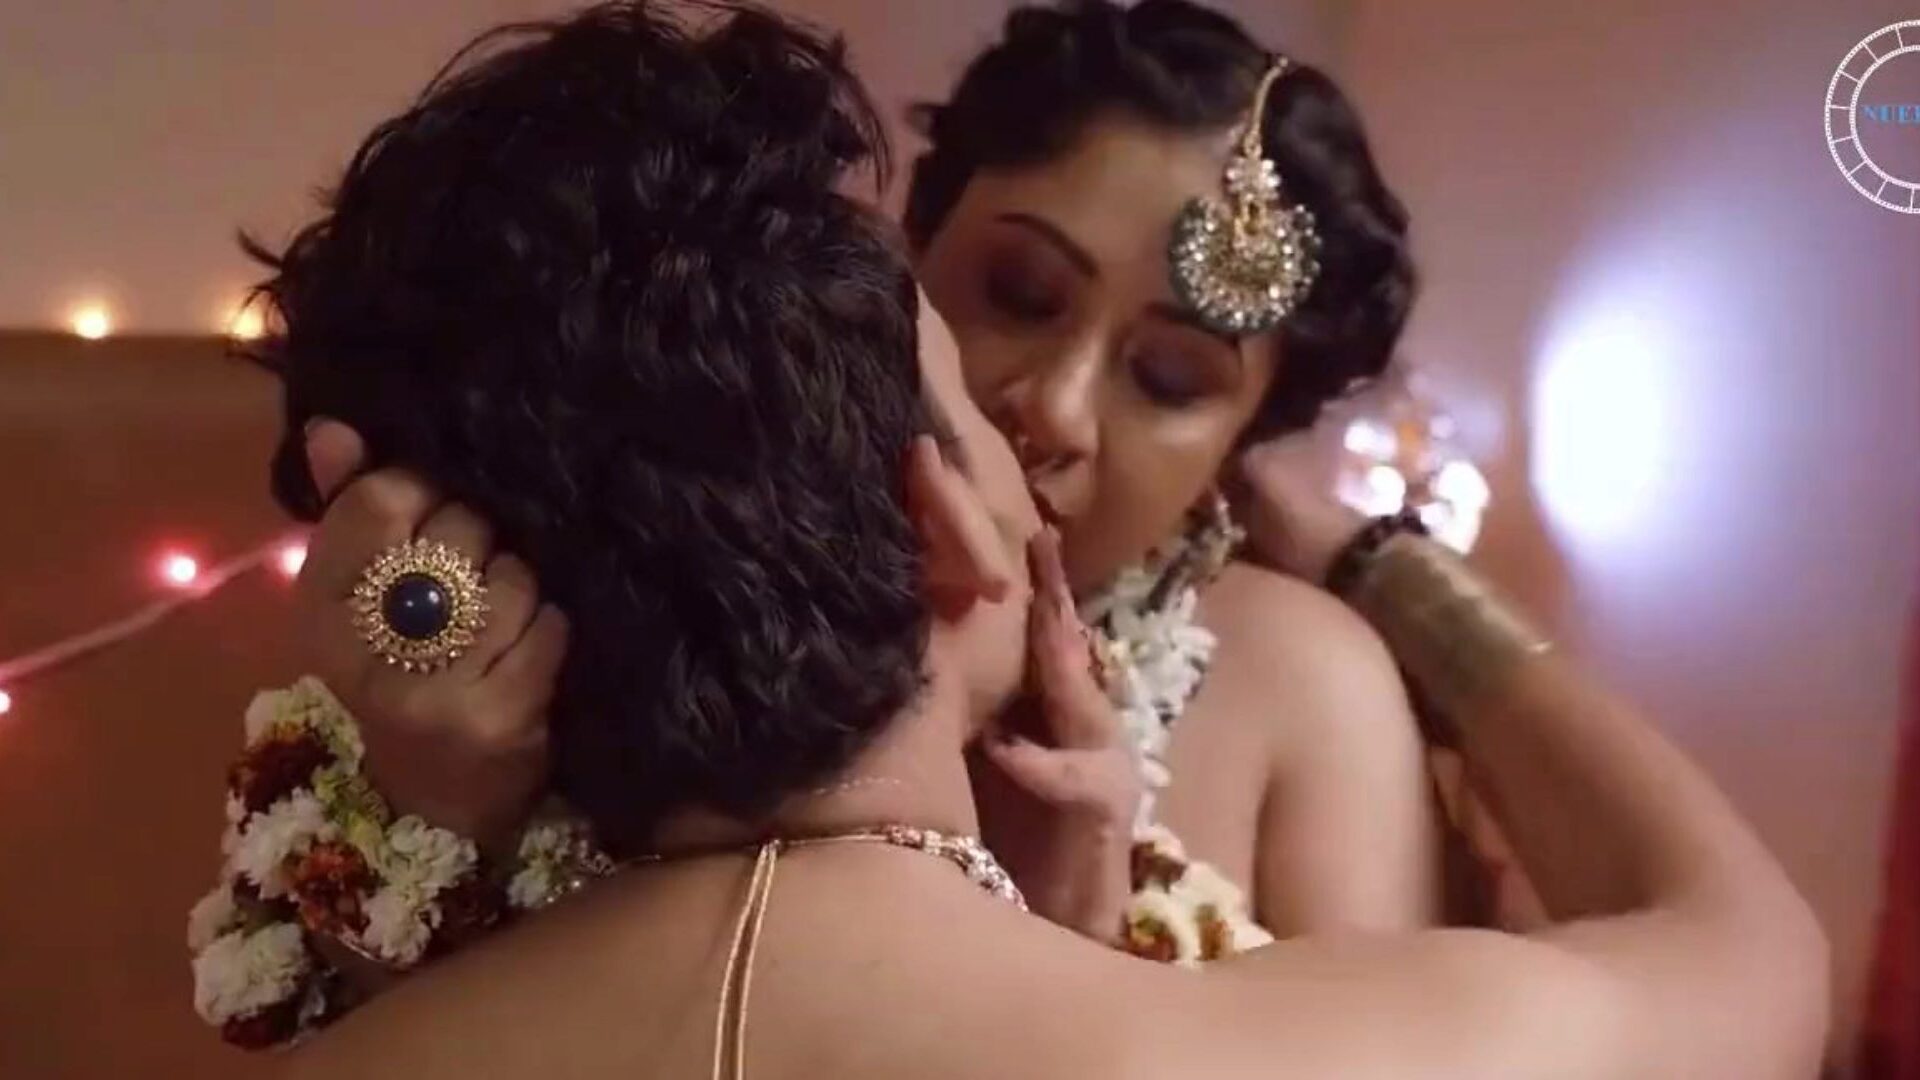 nghykana: big ass & wife hd porn video 91 - xhamster titta på nghykana tube orgie filmscen för gratis för alla på xhamster, med den finaste uppskattningen av bangladeshisk big ass, fru & stora tuttar hd porrklippspelningar